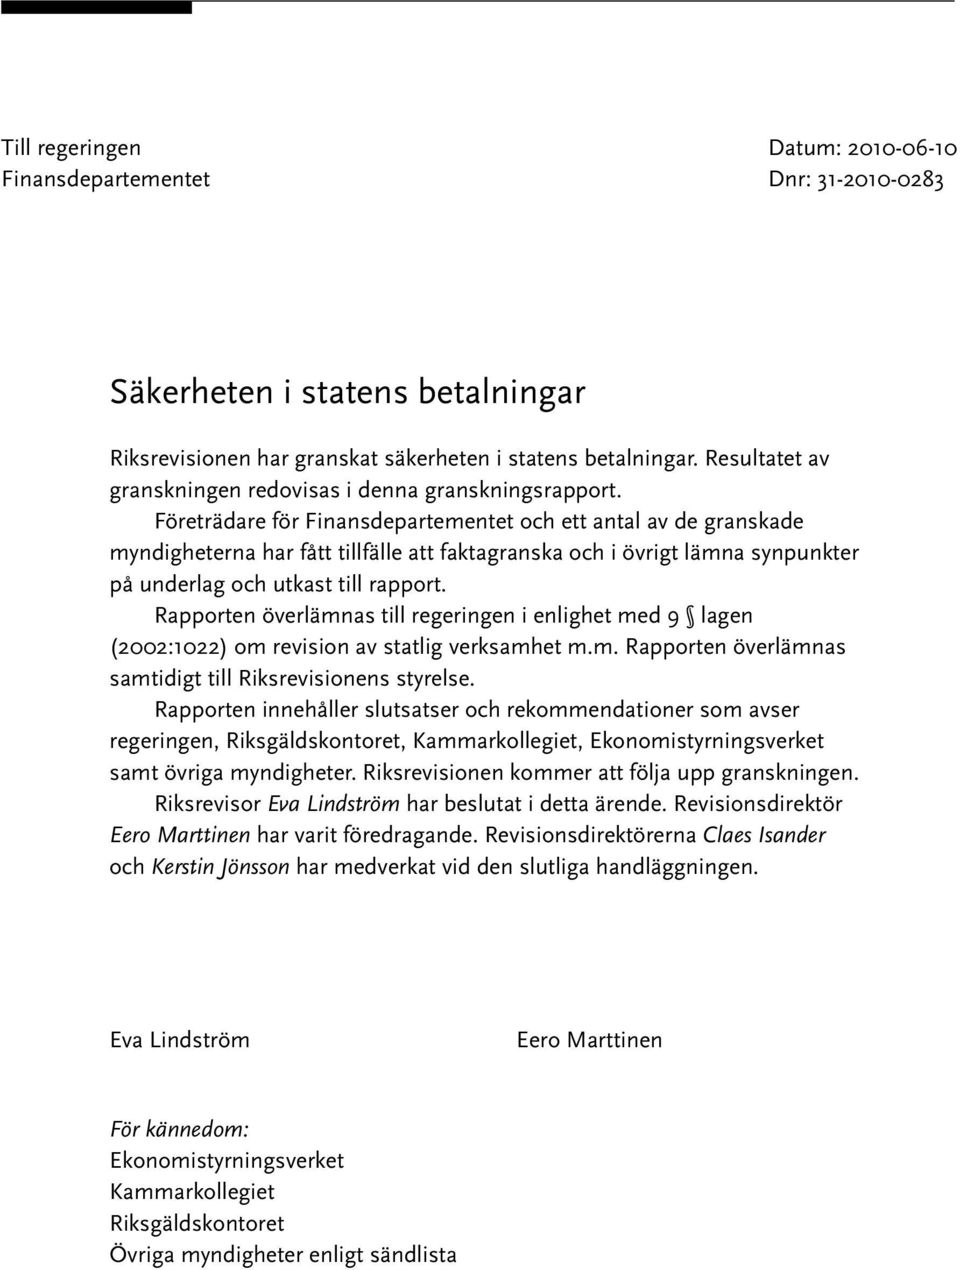 Rapporten överlämnas till regeringen i enlighet med 9 lagen (2002:1022) om revision av statlig verksamhet m.m. Rapporten överlämnas samtidigt till Riksrevisionens styrelse.